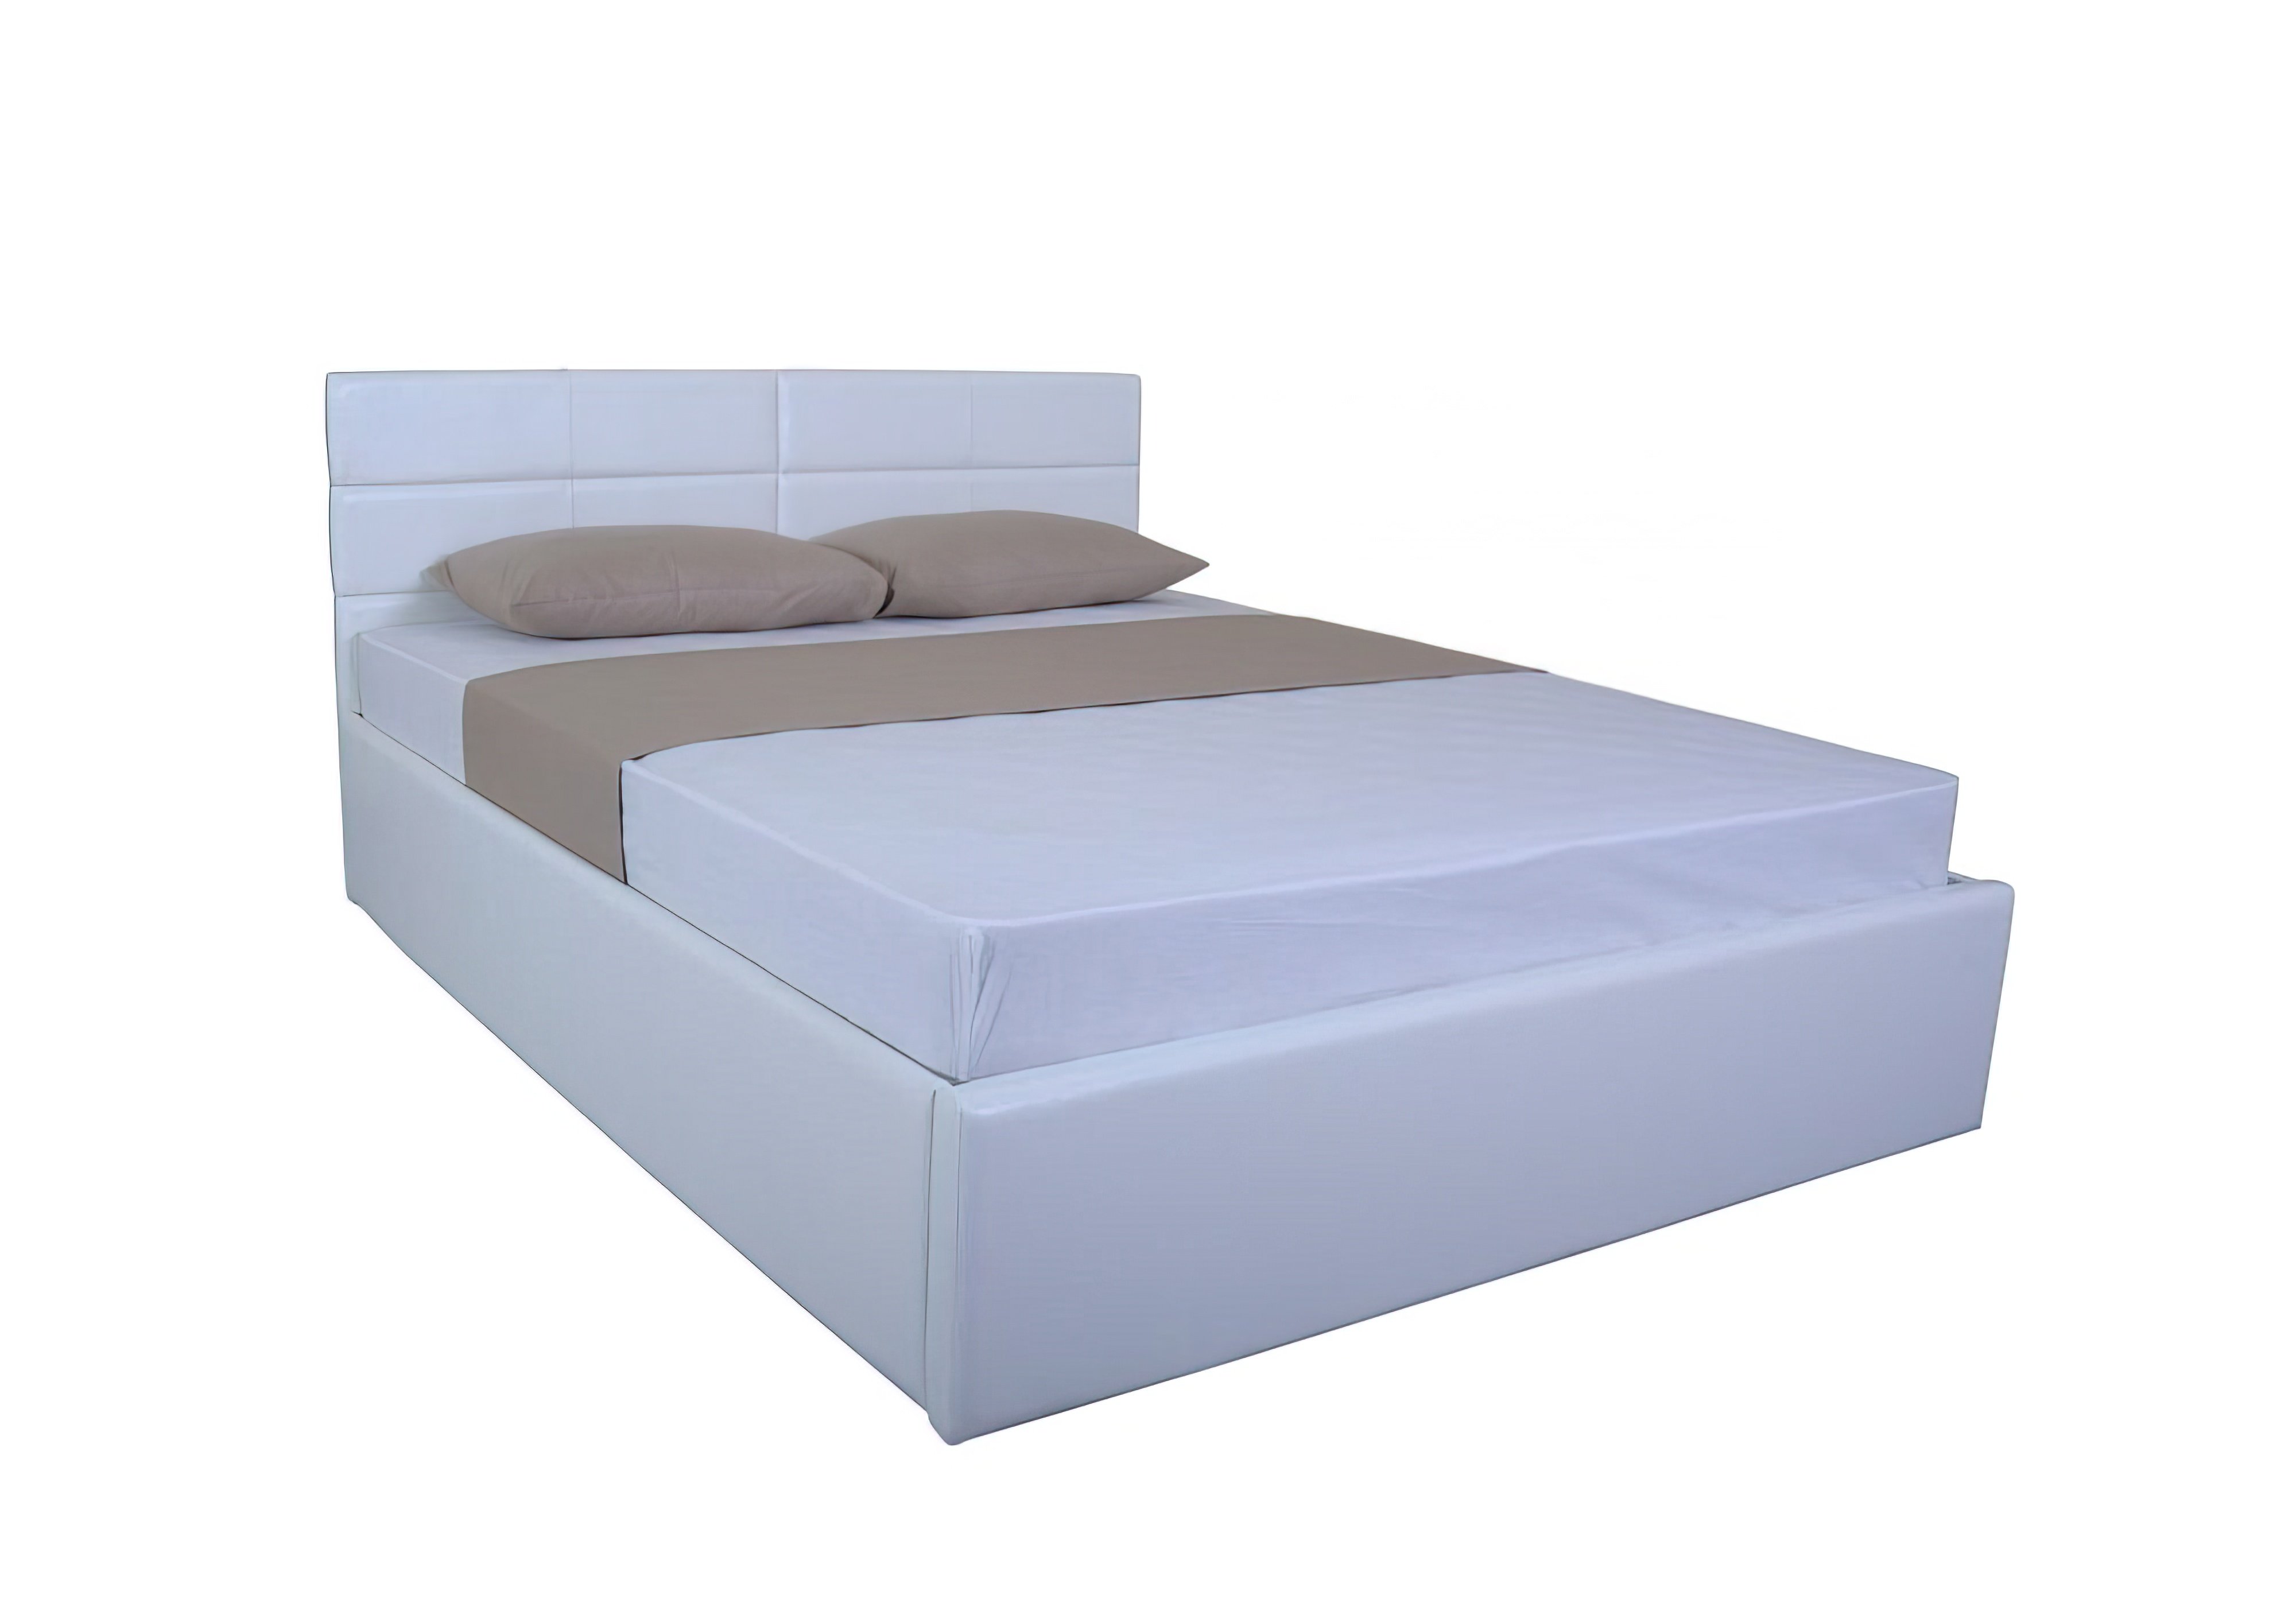  Купить Кровати с подъемным механизмом Кровать с подъемным механизмом "LAGUNA lift" EAGLE